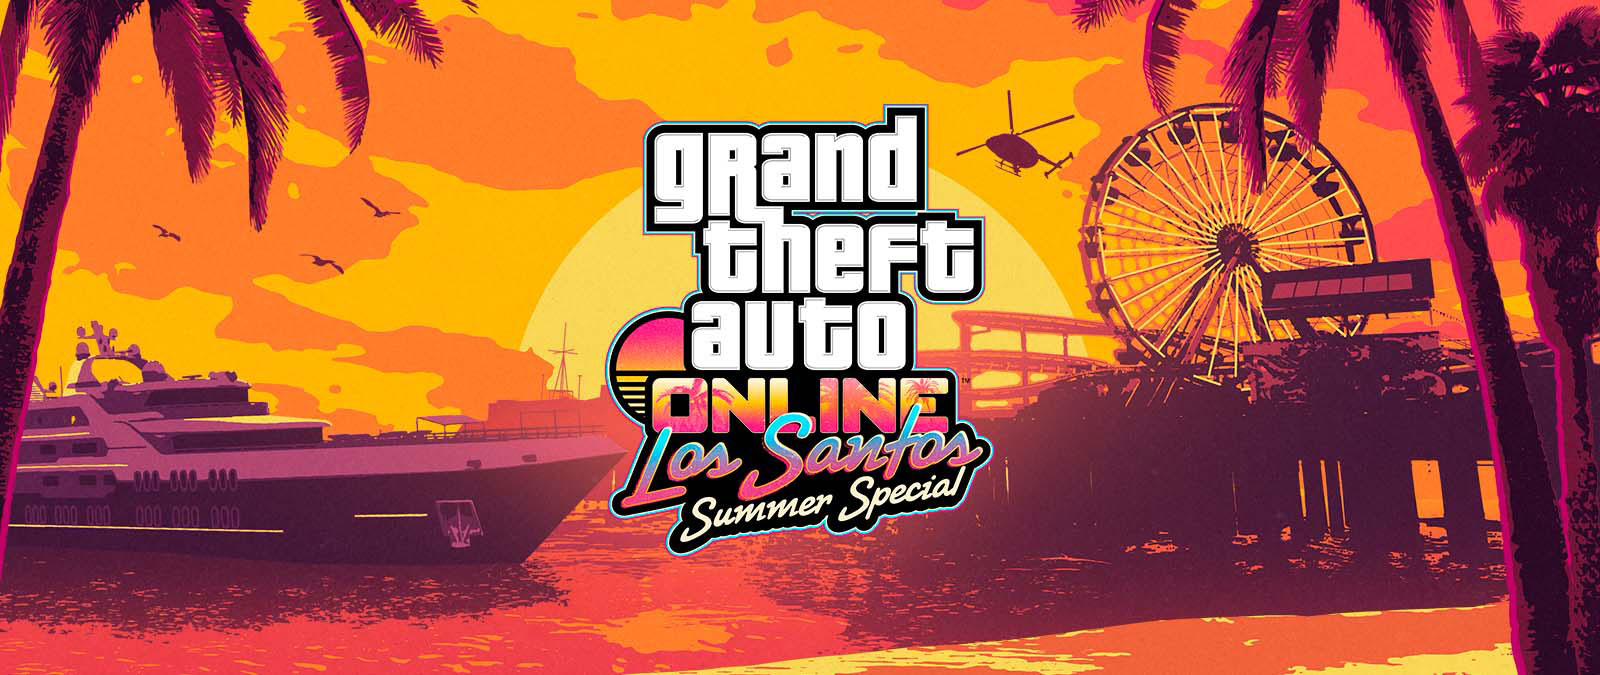 Grand Theft Auto Online. Los Santos Summer Special. Un yacht, une grande roue et un hélicoptère au coucher du soleil